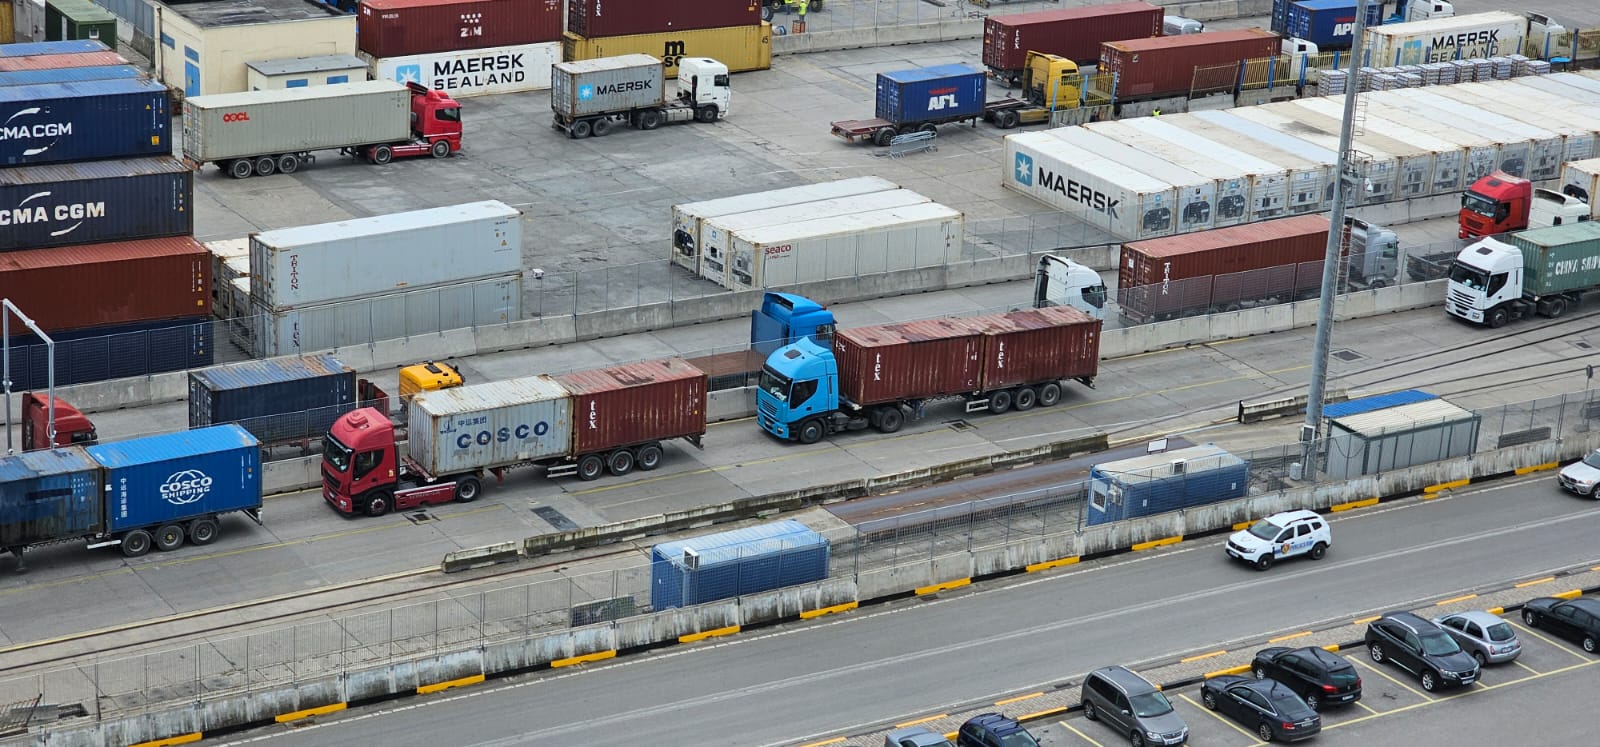 Anijet në terminalin e kontejnerëve të bllokuara deri në 3 ditë për shkarkim; APD: Do shtojmë mjetet